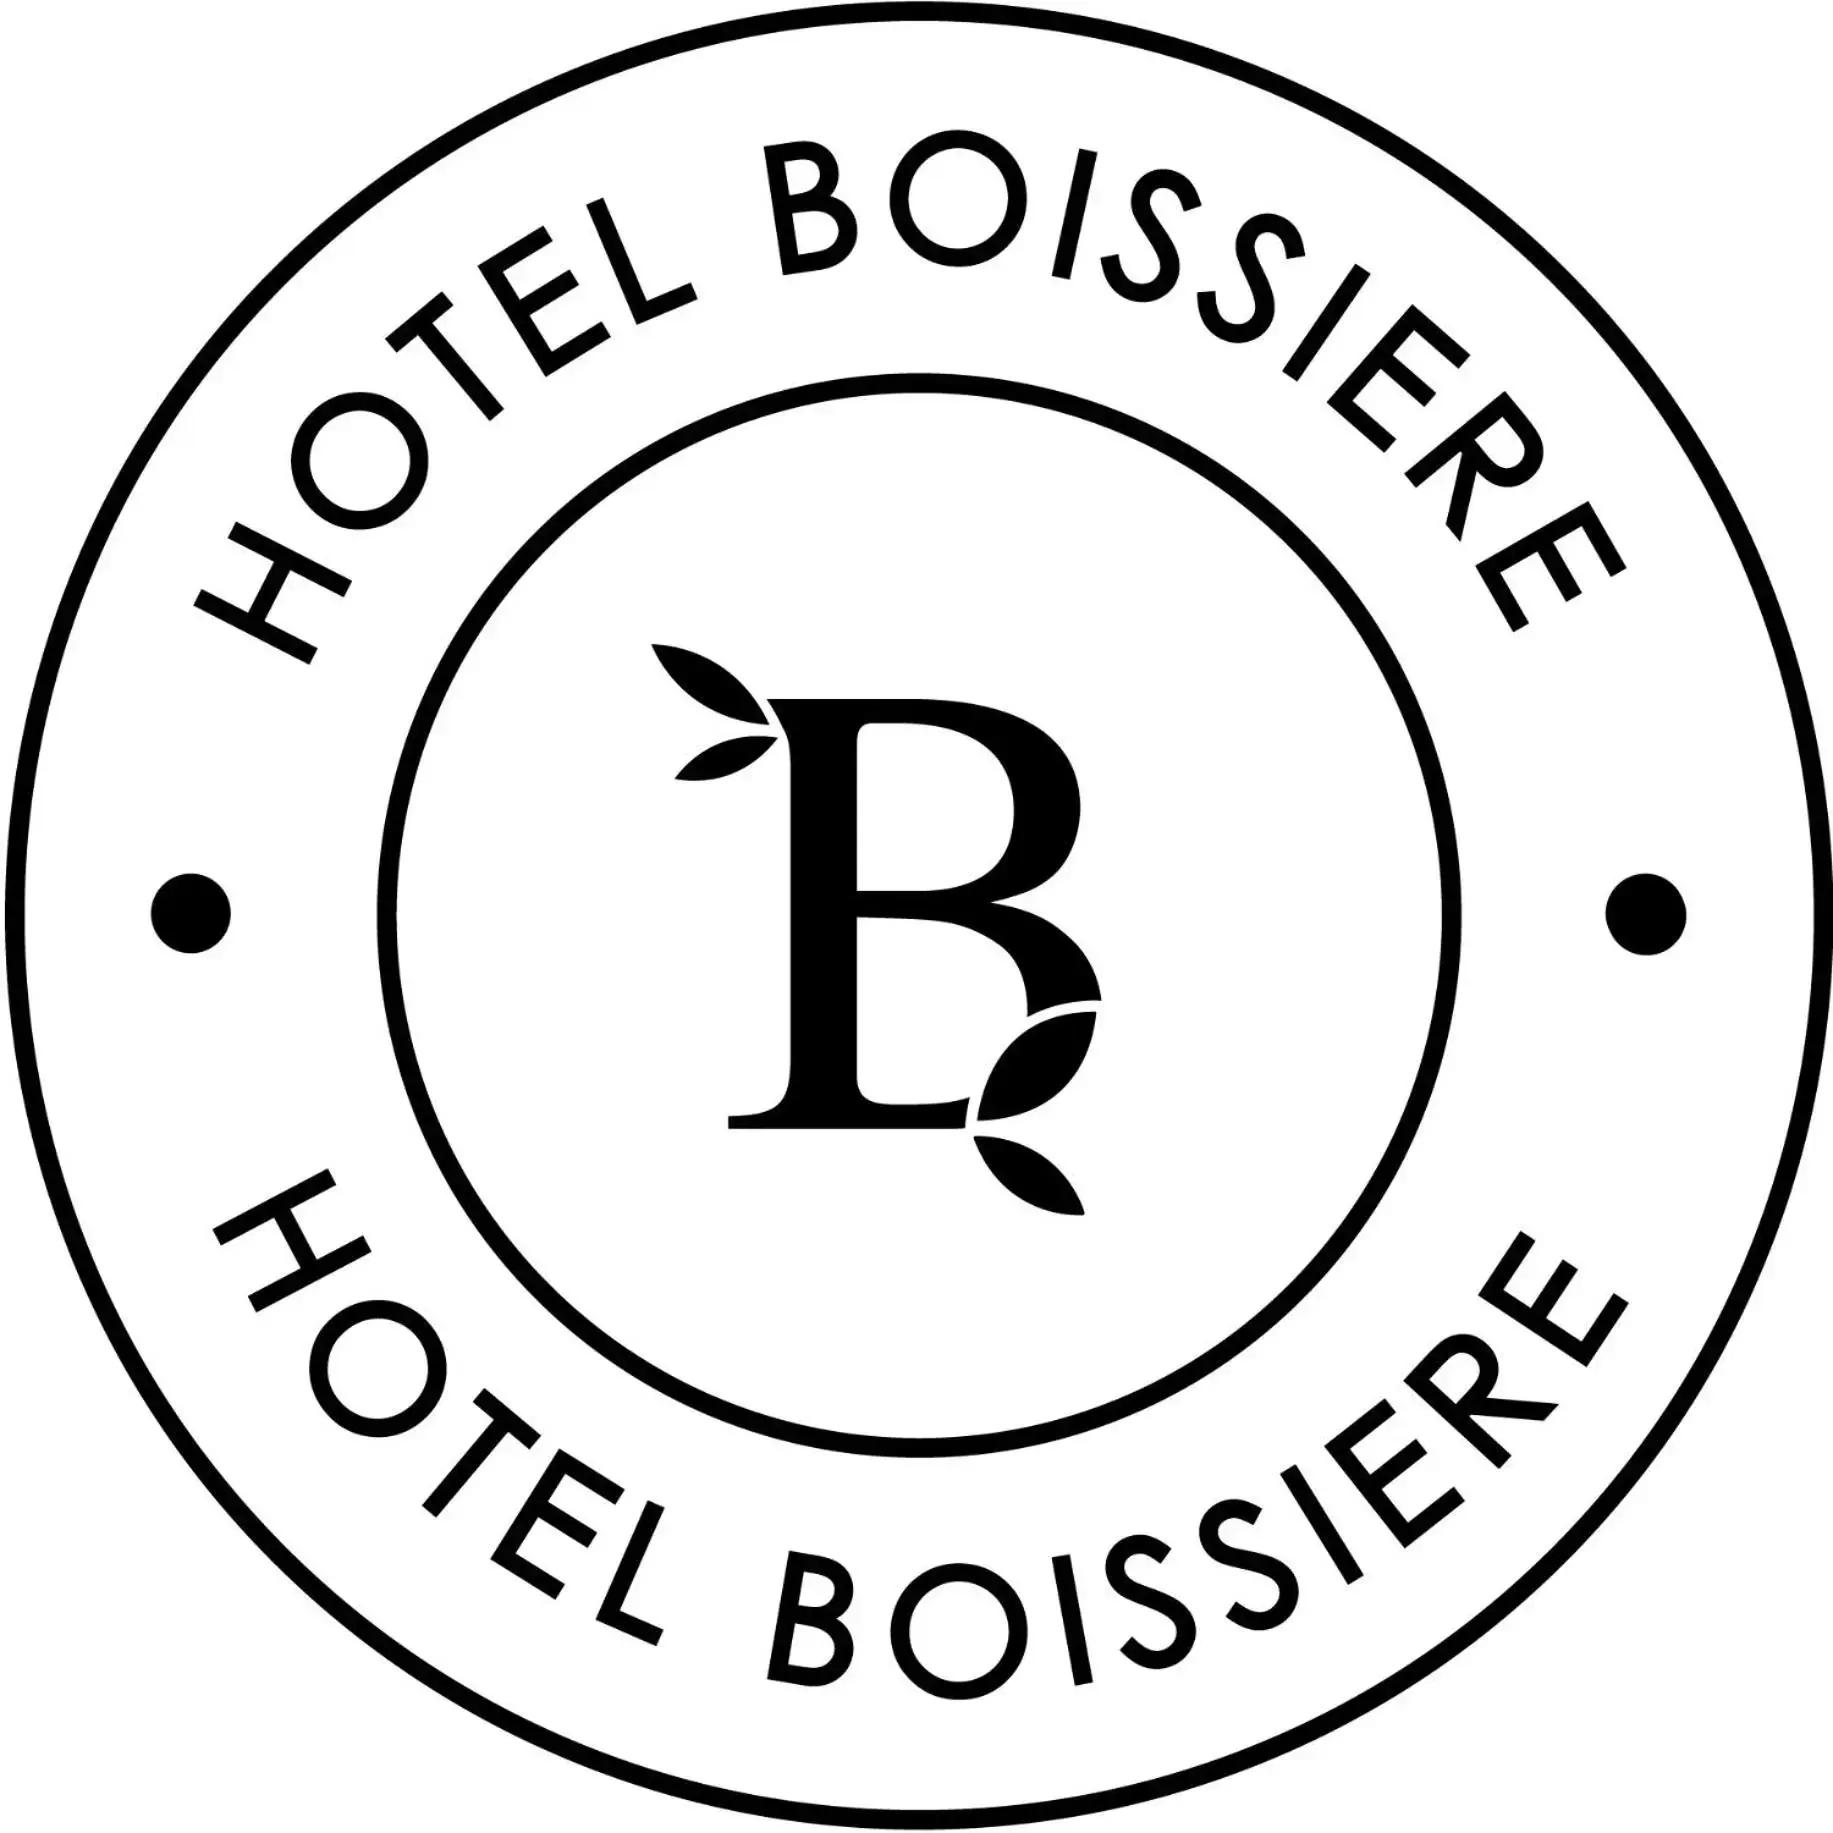 Property logo or sign in Hôtel Boissière